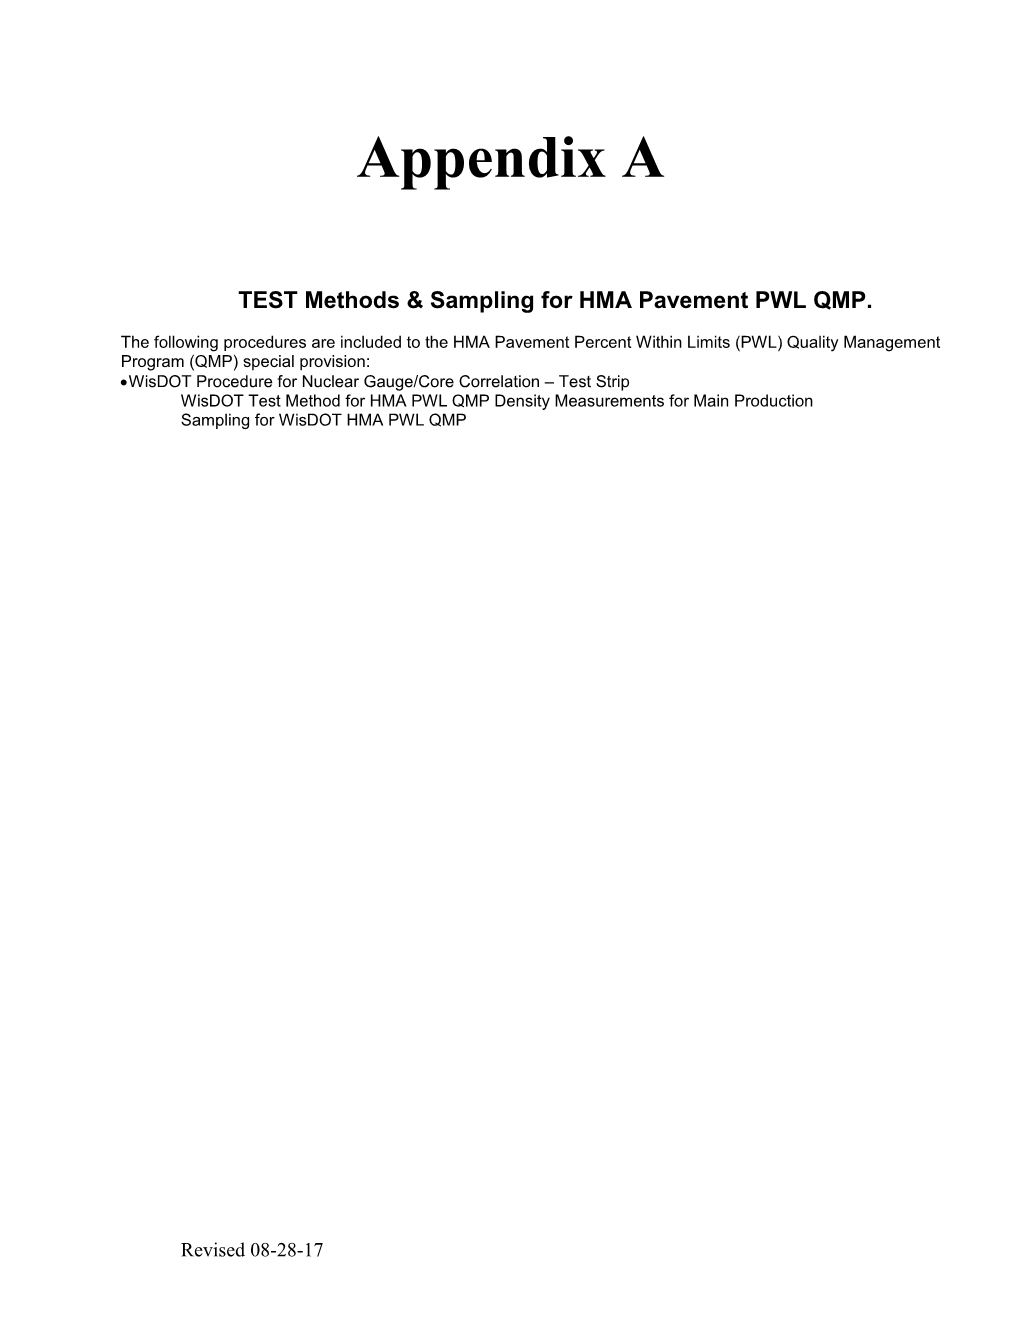 Hma-Pwl-Appendix-A-10-02-17